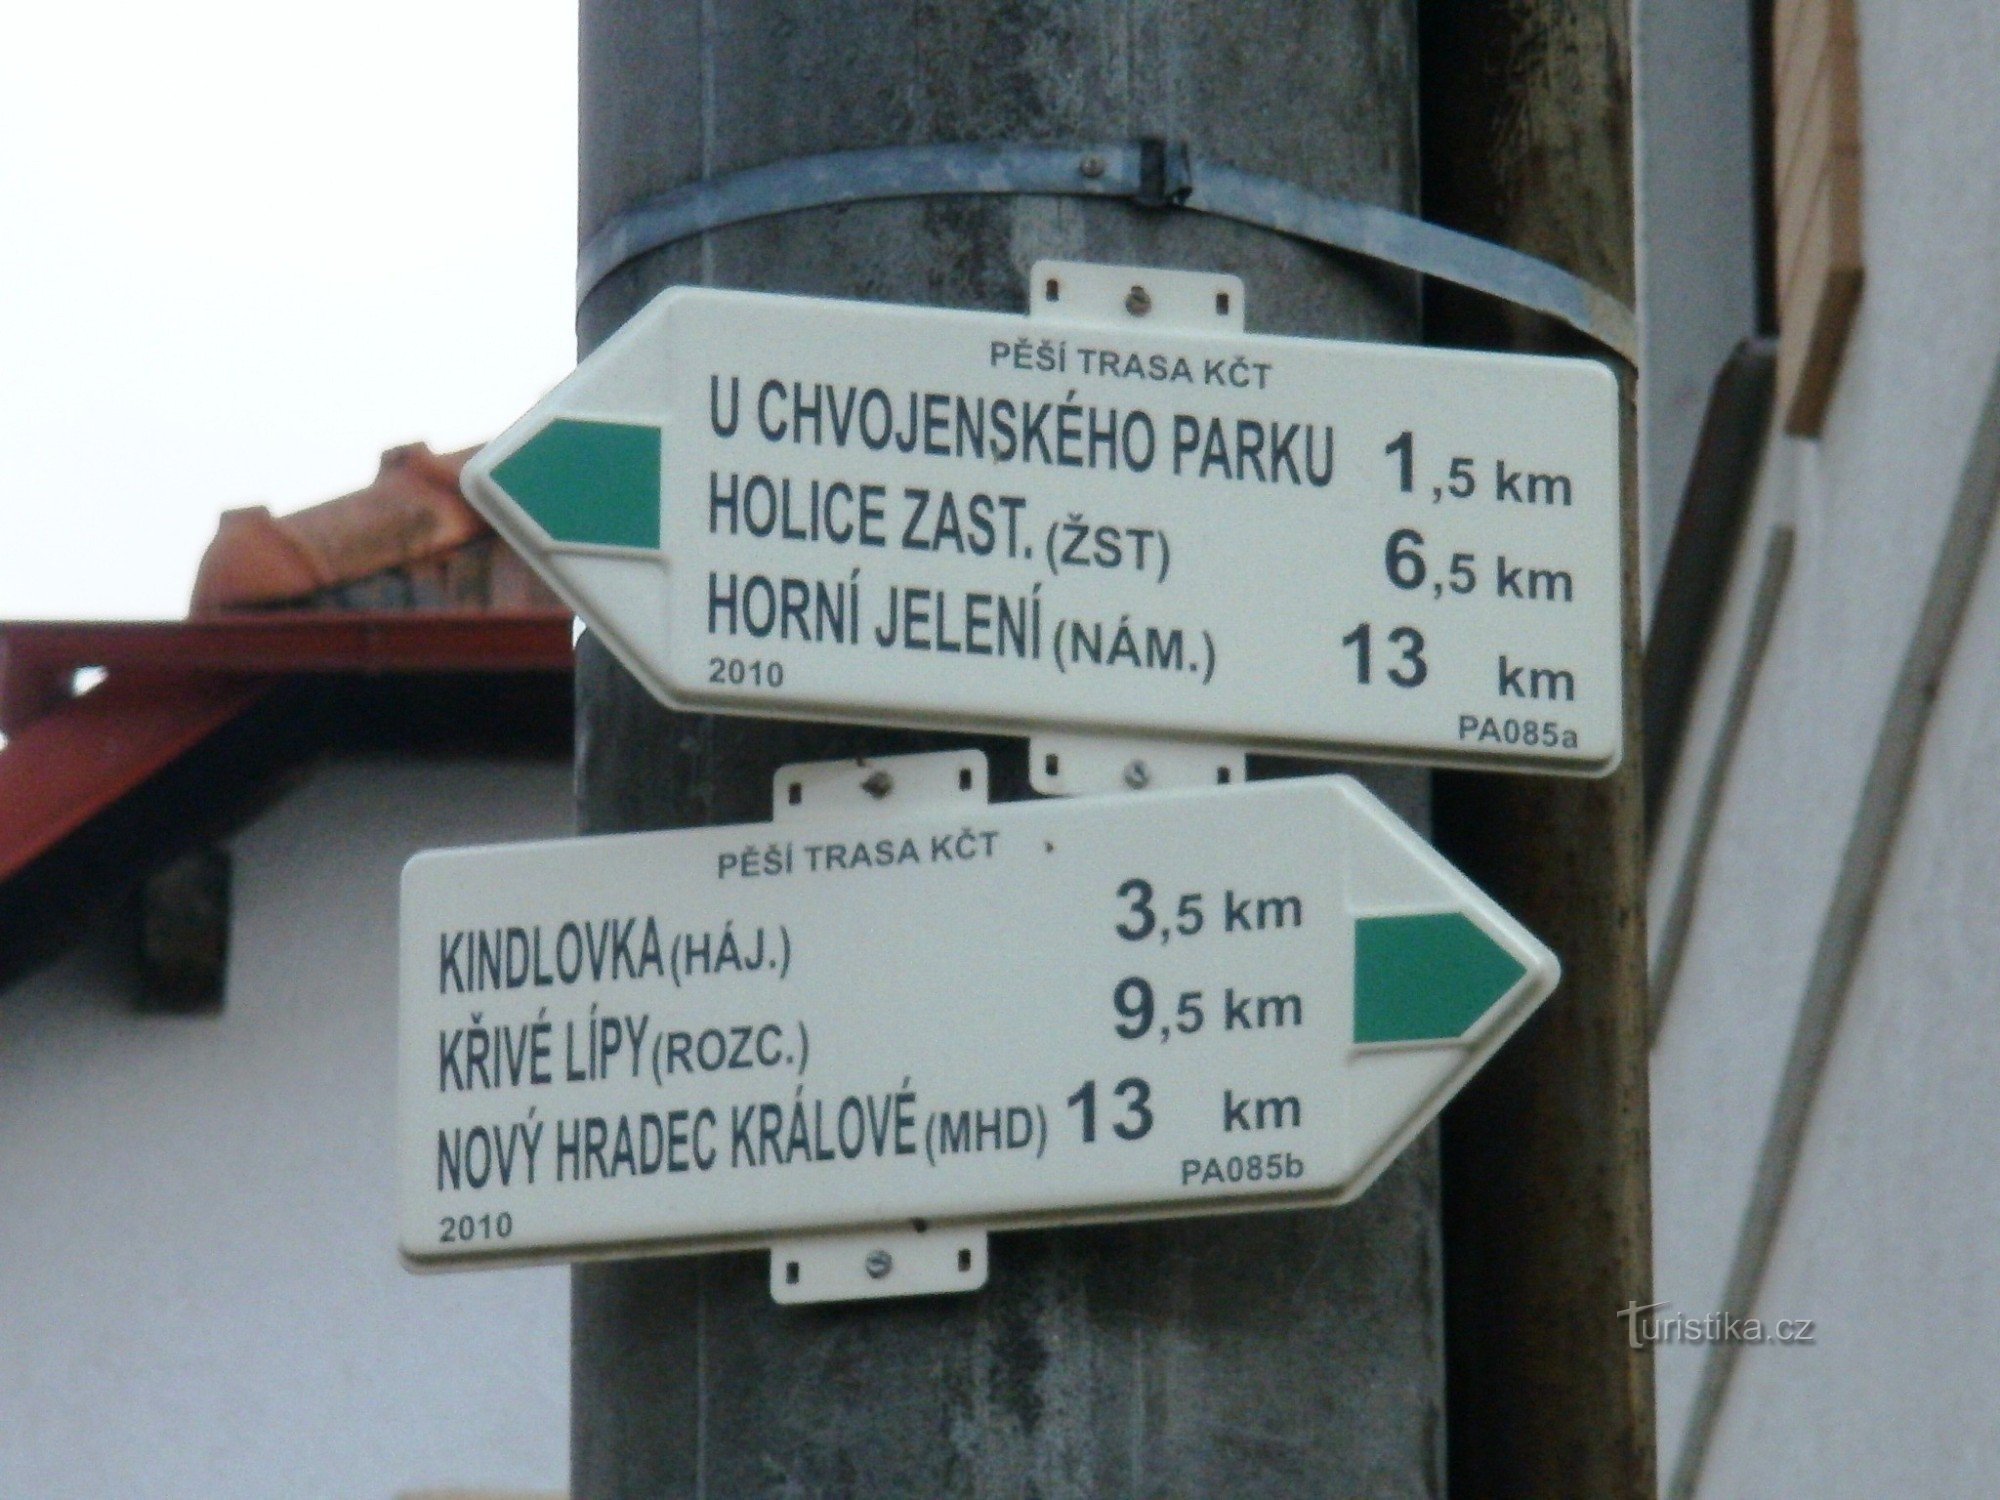 Răscruce turistică Vysoké Chvojno